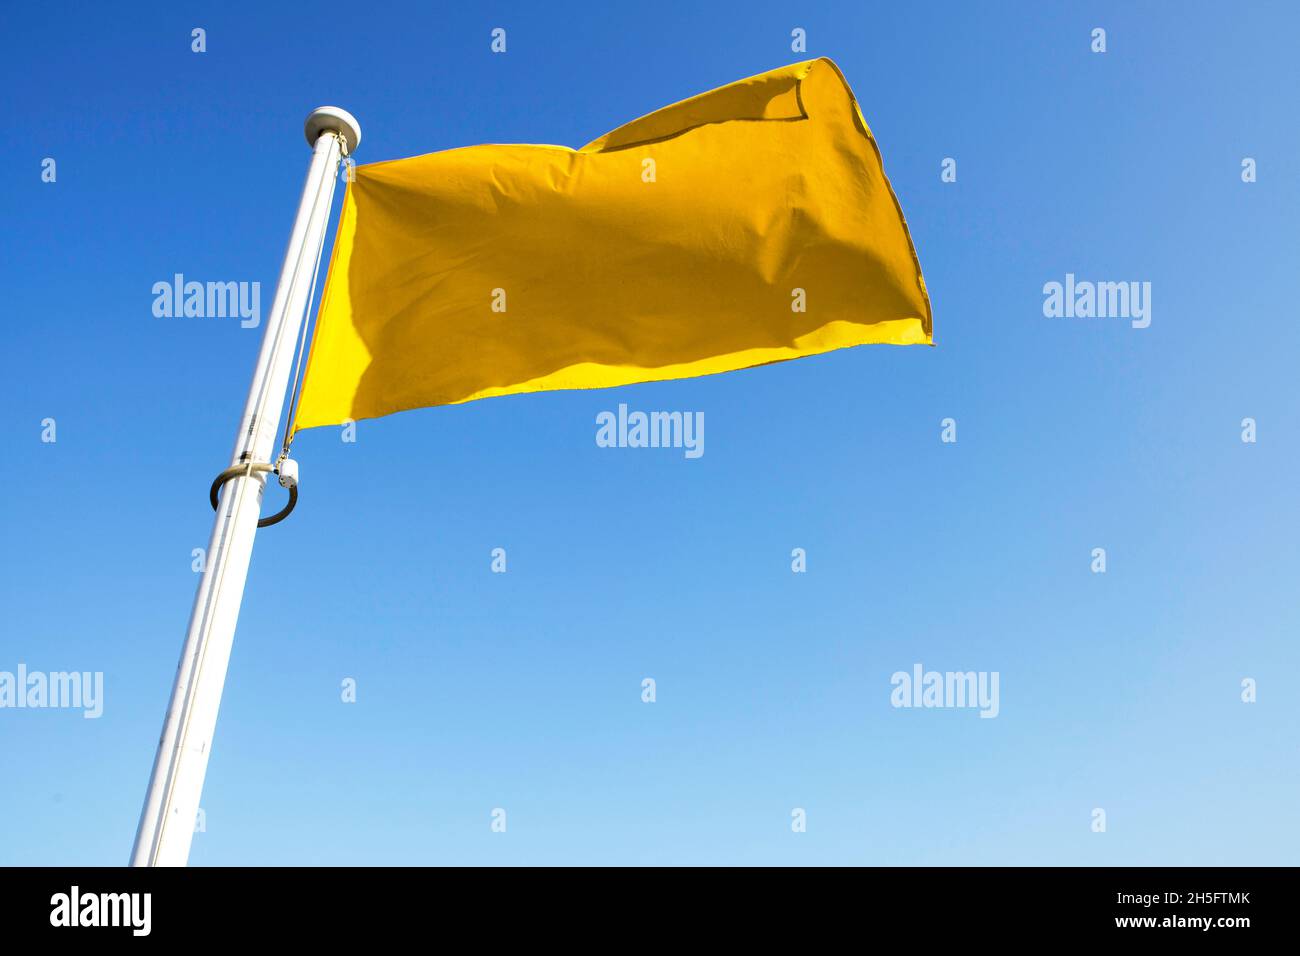 Gelbe Flagge / Fahne, befestigt an einem weißen Masten, weht im Wind vor einem blauen Himmel. Cannes, Frankreich. Foto de stock